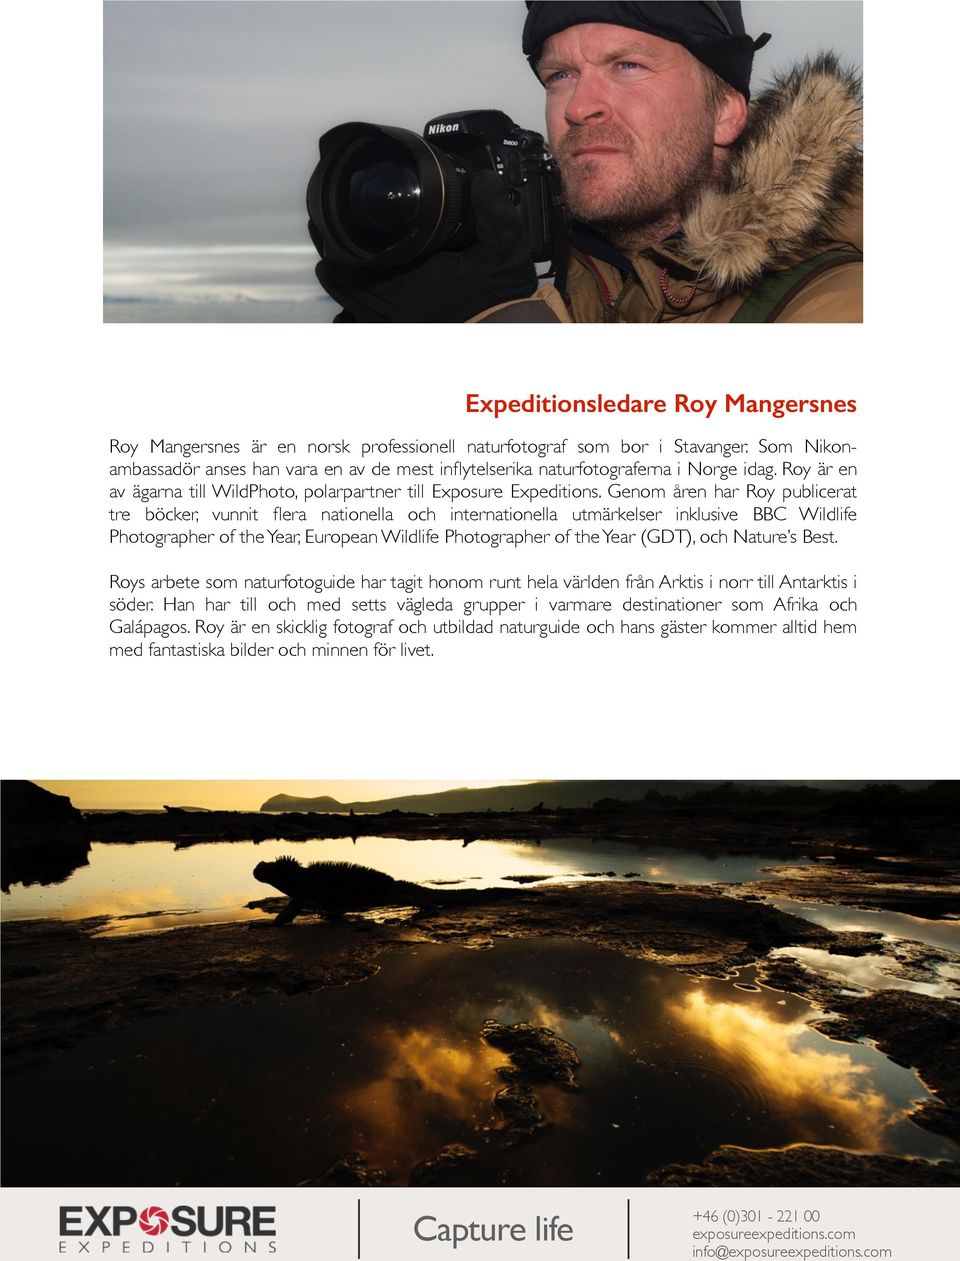 Genom åren har Roy publicerat tre böcker, vunnit flera nationella och internationella utmärkelser inklusive BBC Wildlife Photographer of the Year, European Wildlife Photographer of the Year (GDT),